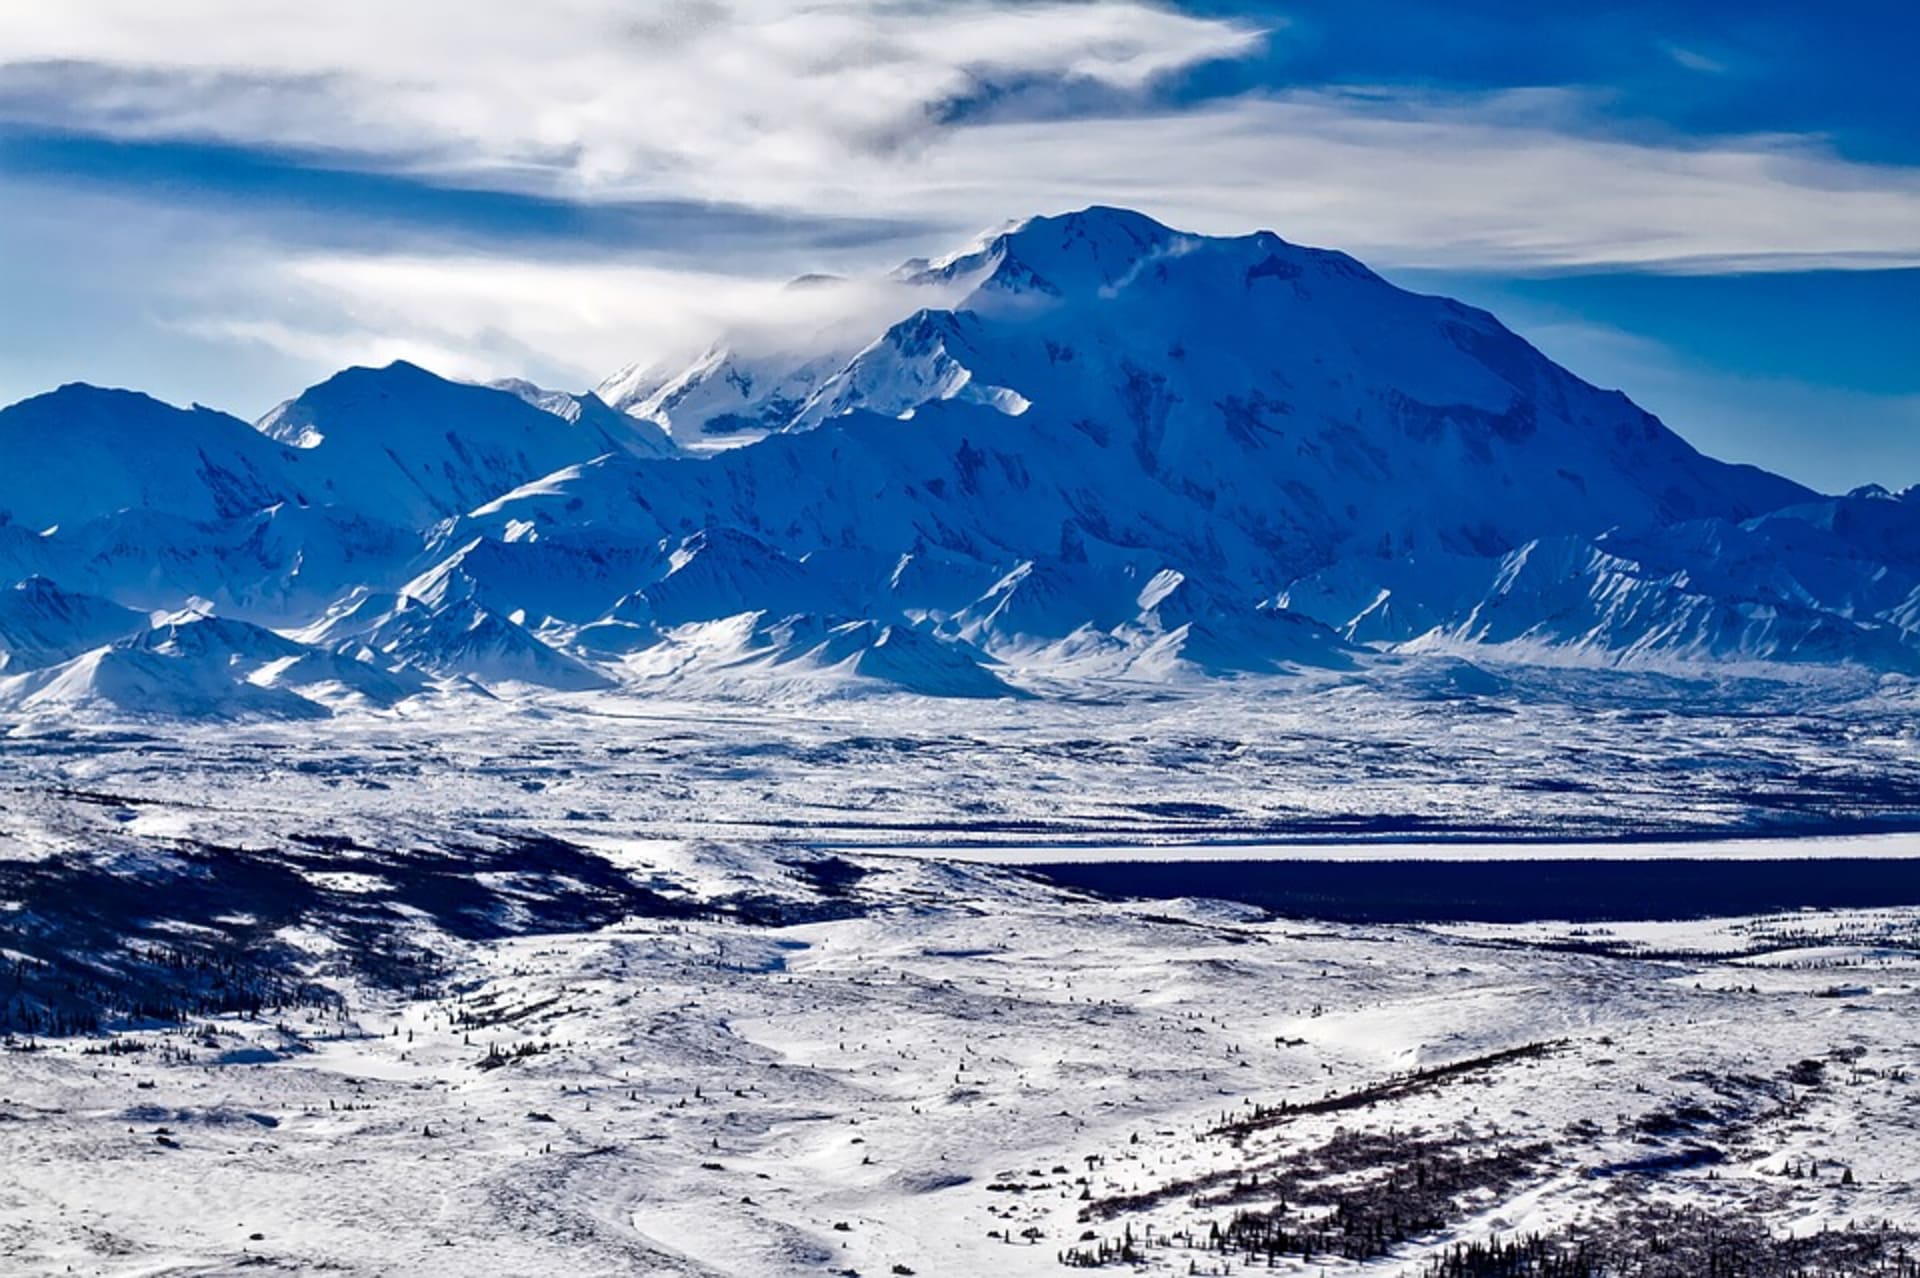 Hora Mount McKinley, známá i jako Denali, nejvyšší bod Aljašky i celé Severní Ameriky